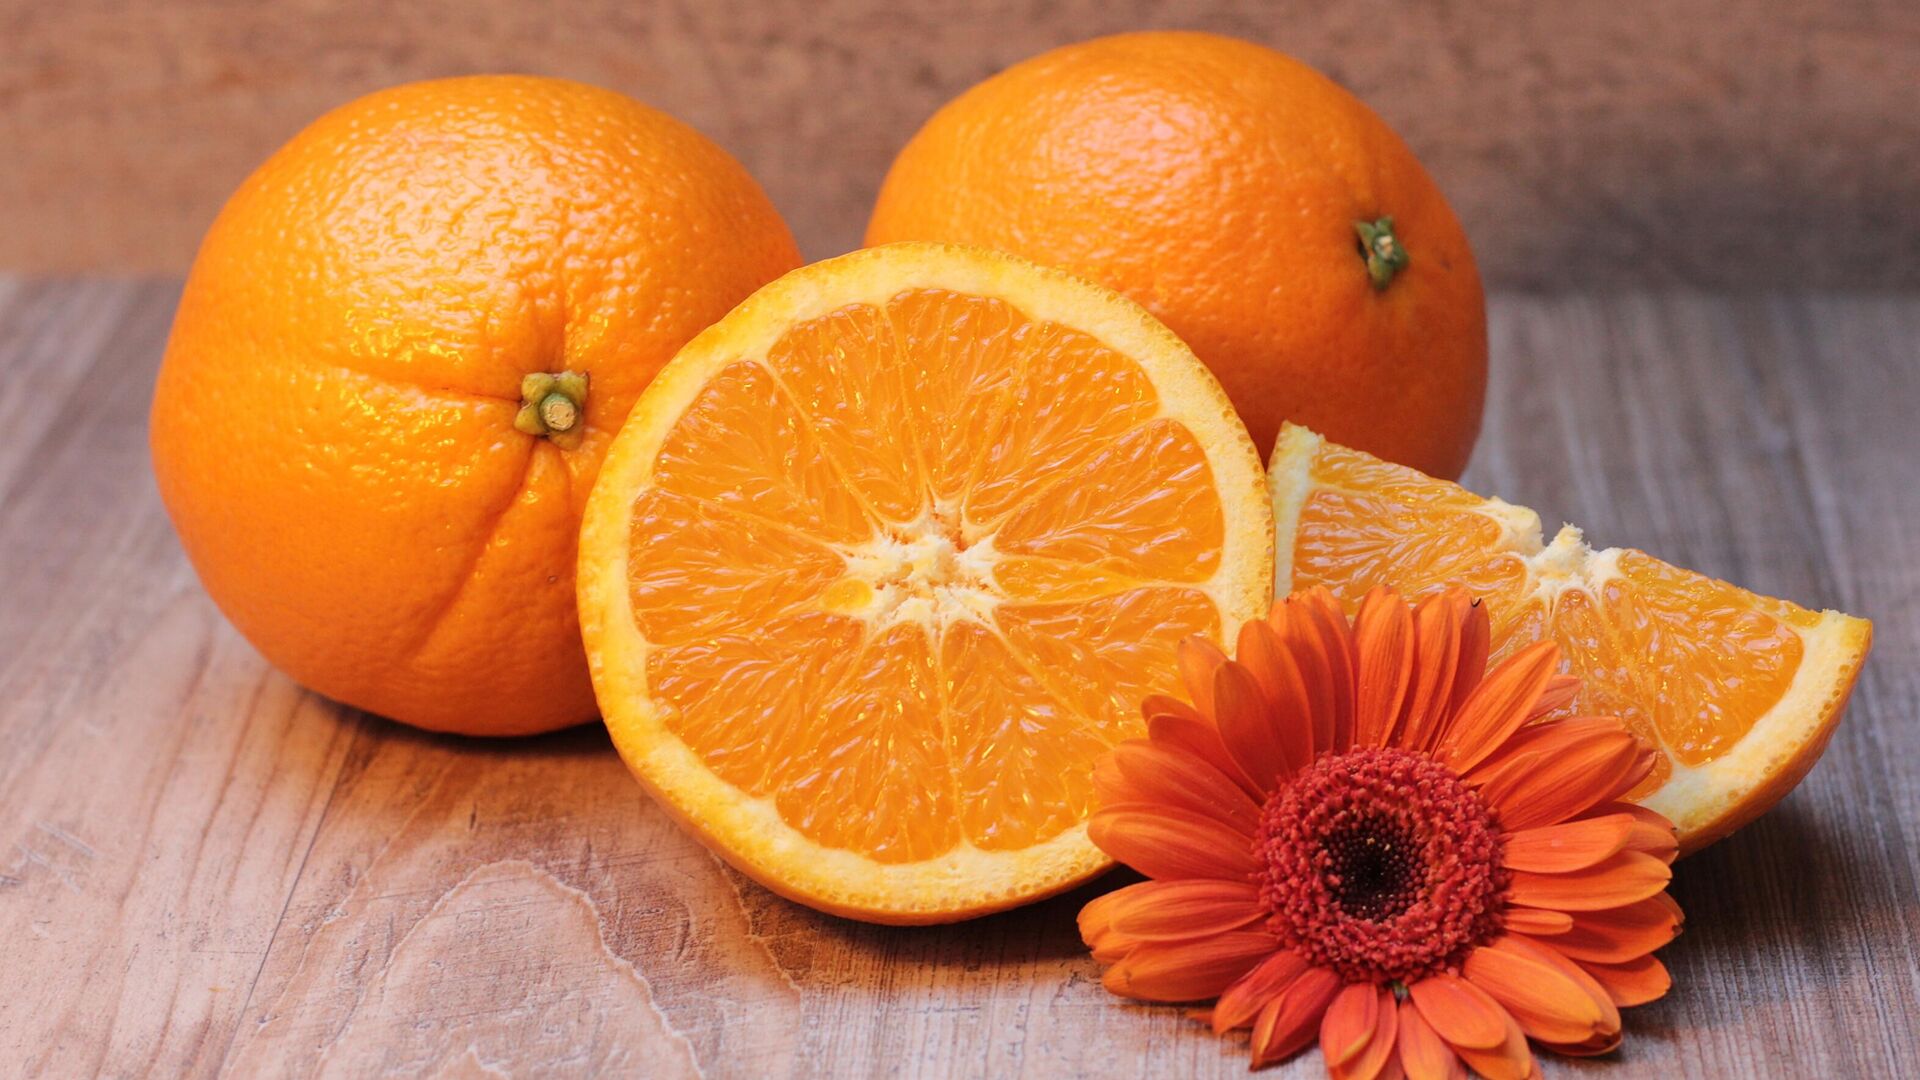 Нутрициолог Половинская: высокая кислотность апельсинов может плохо влиять на зубную эмаль